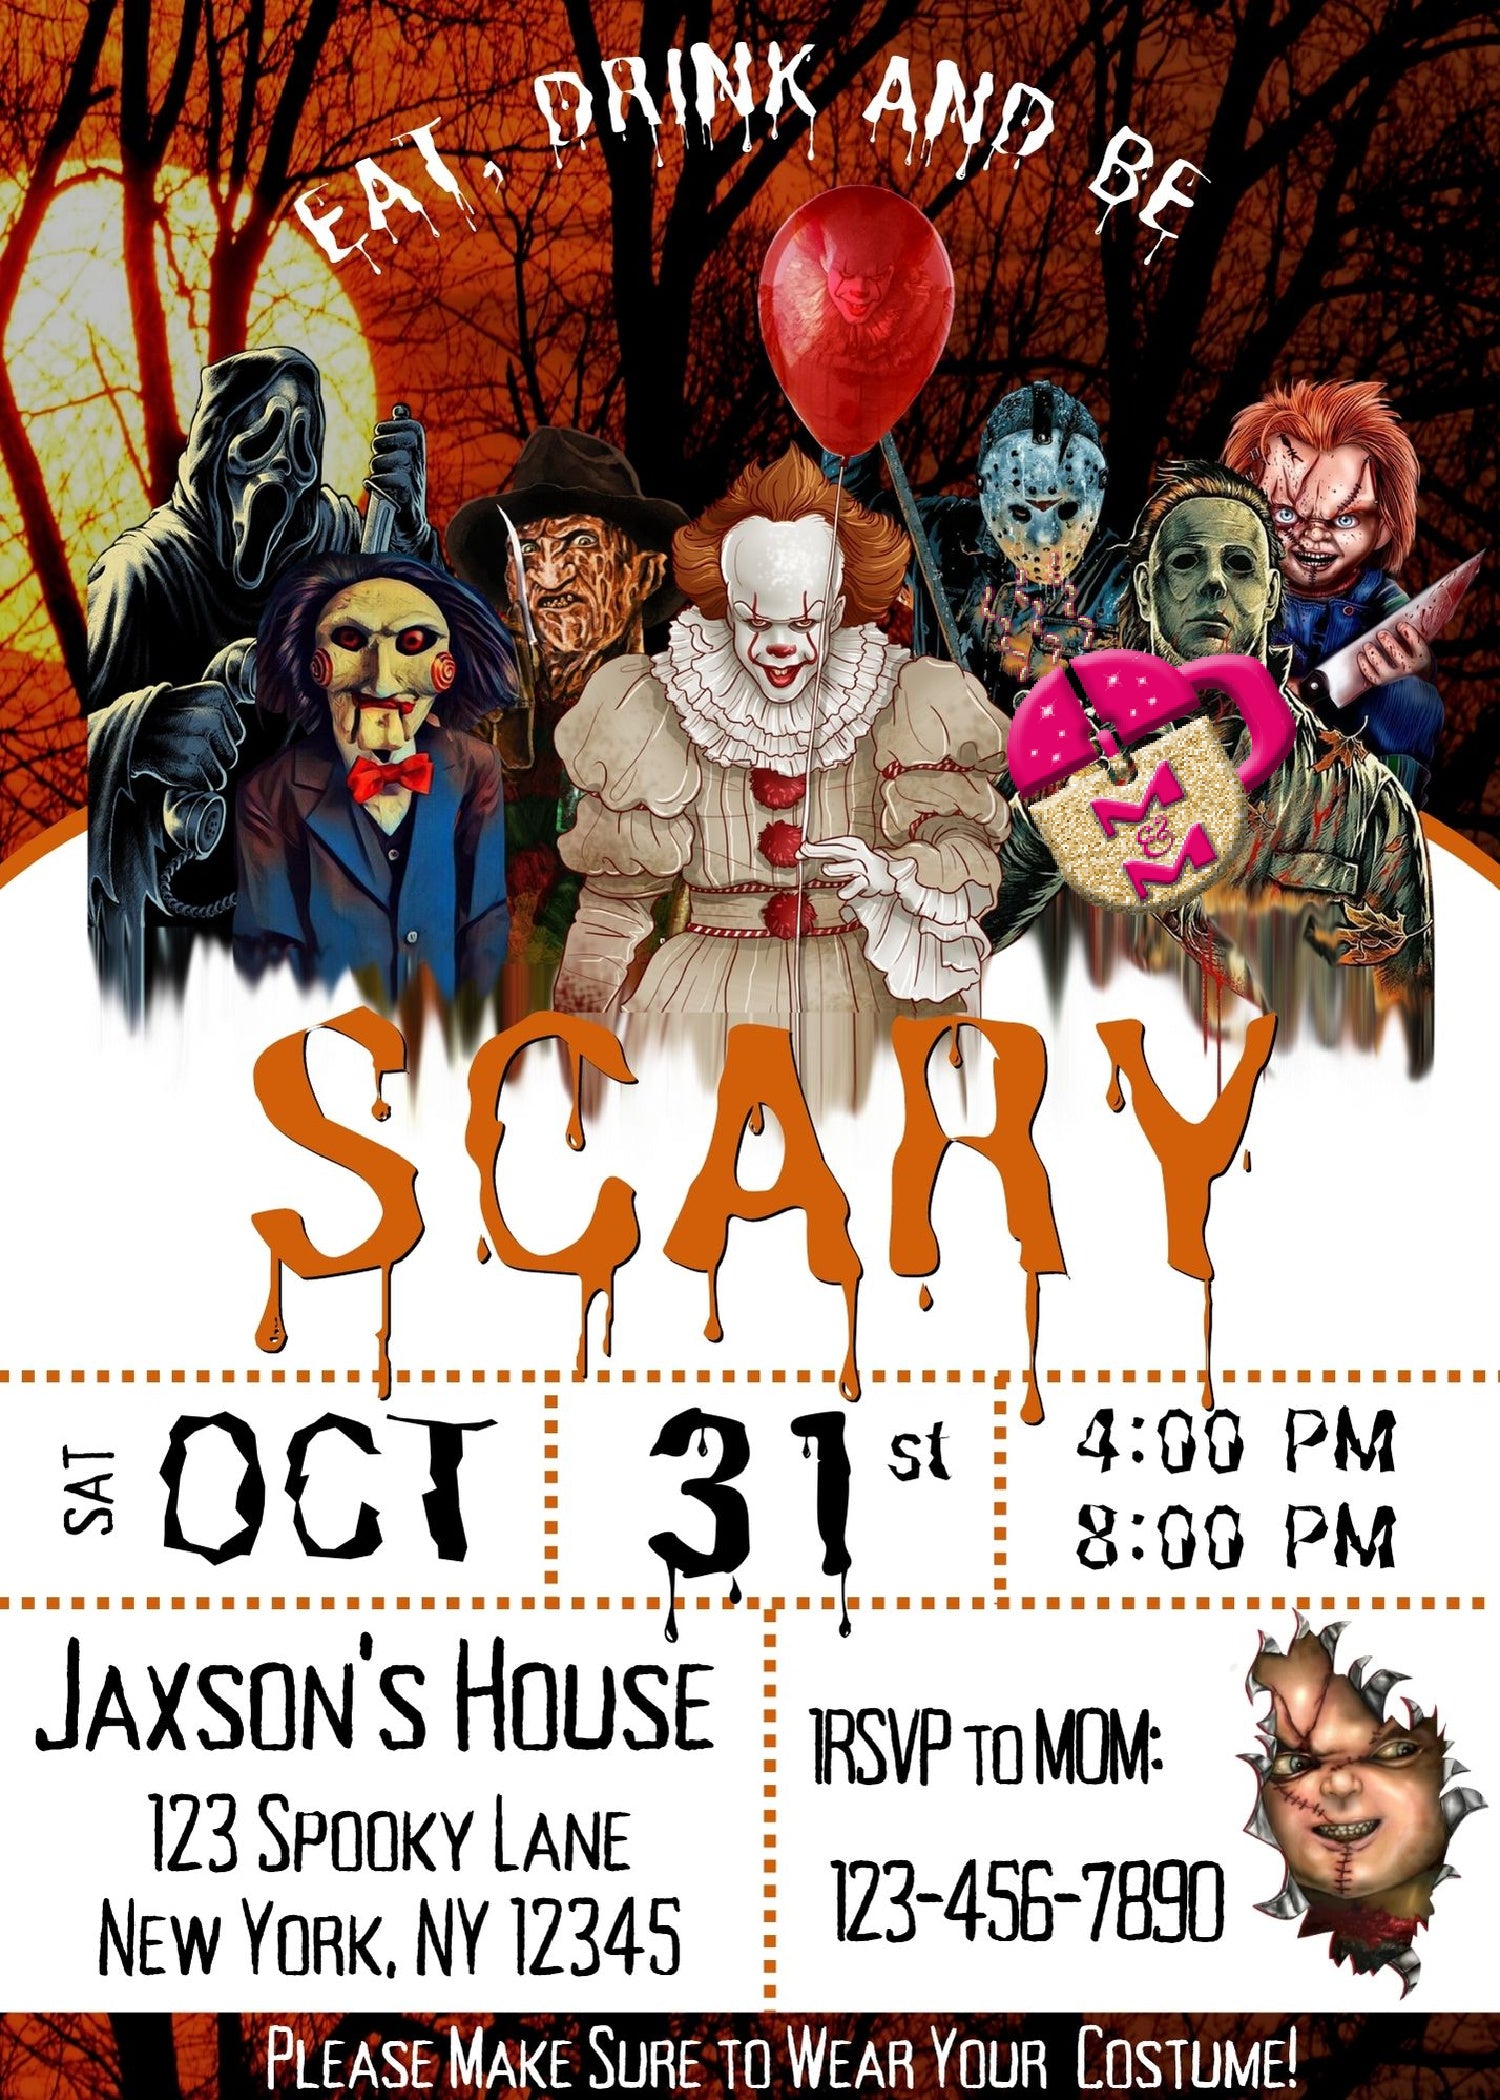 Editable Horror Movie Halloween Invitation Printable